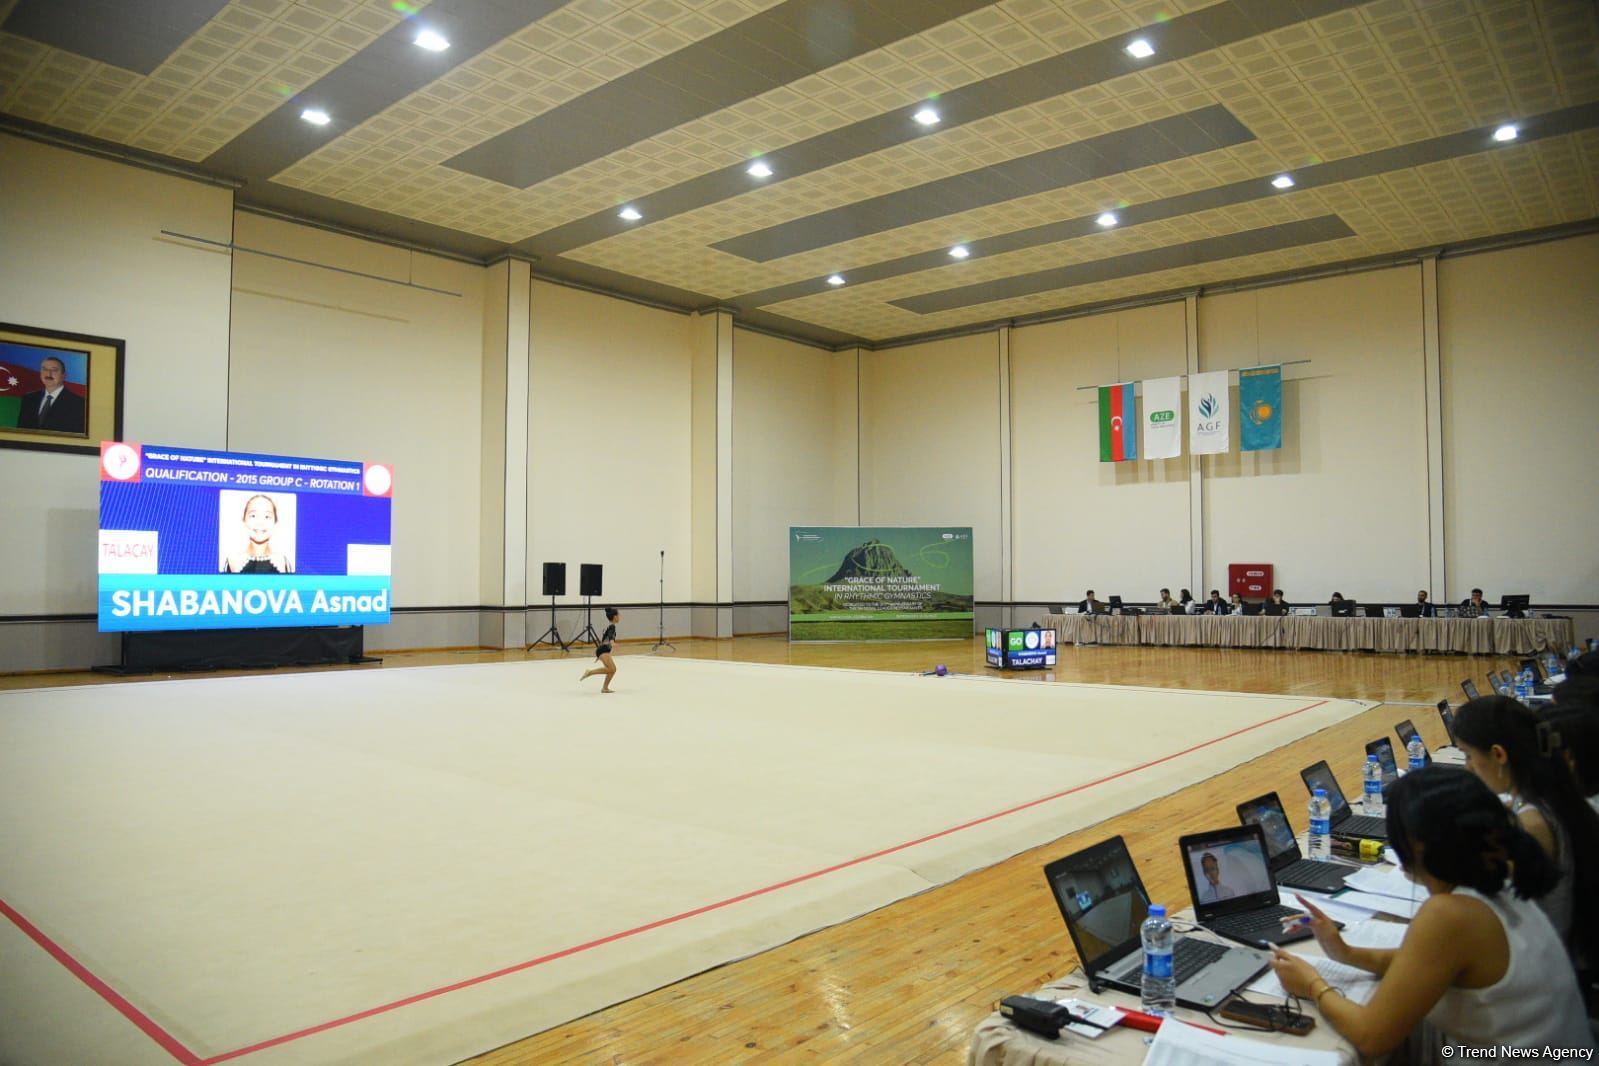 В Нахчыване стартовал Международный турнир по художественной гимнастике "Grace of Nature" (ФОТО)